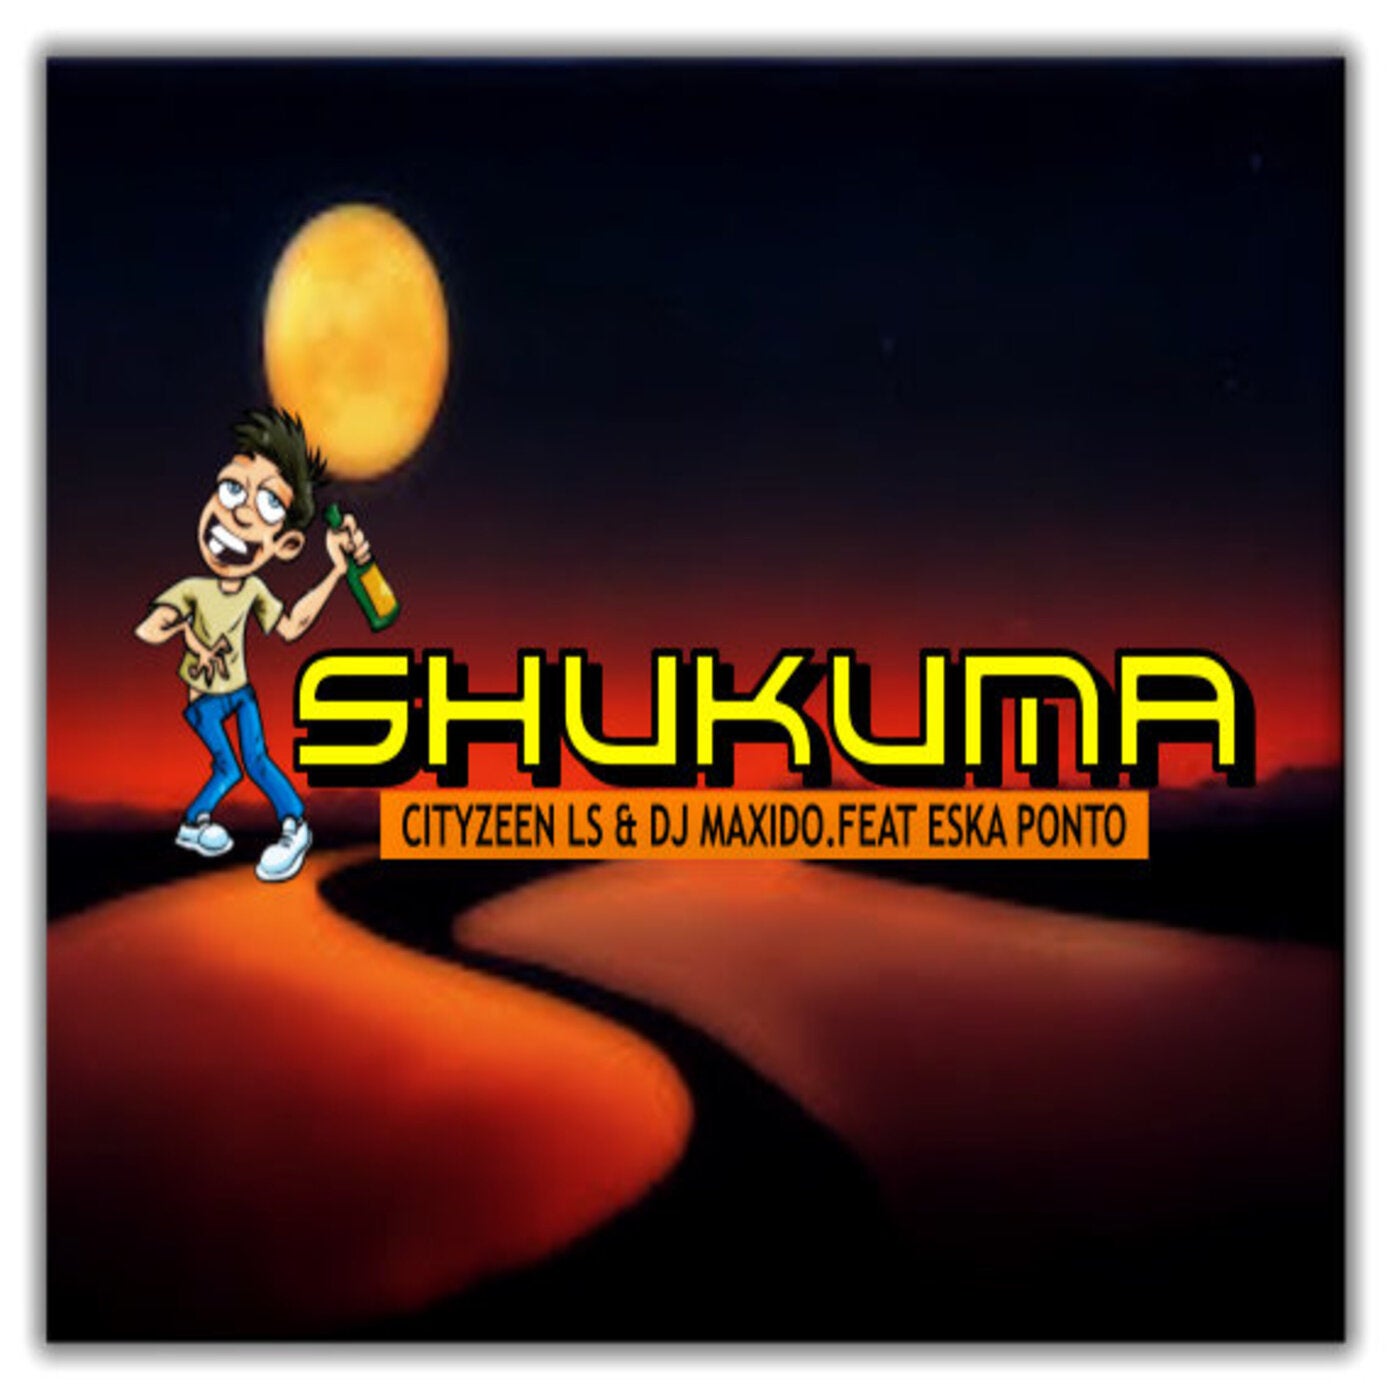 Shukuma